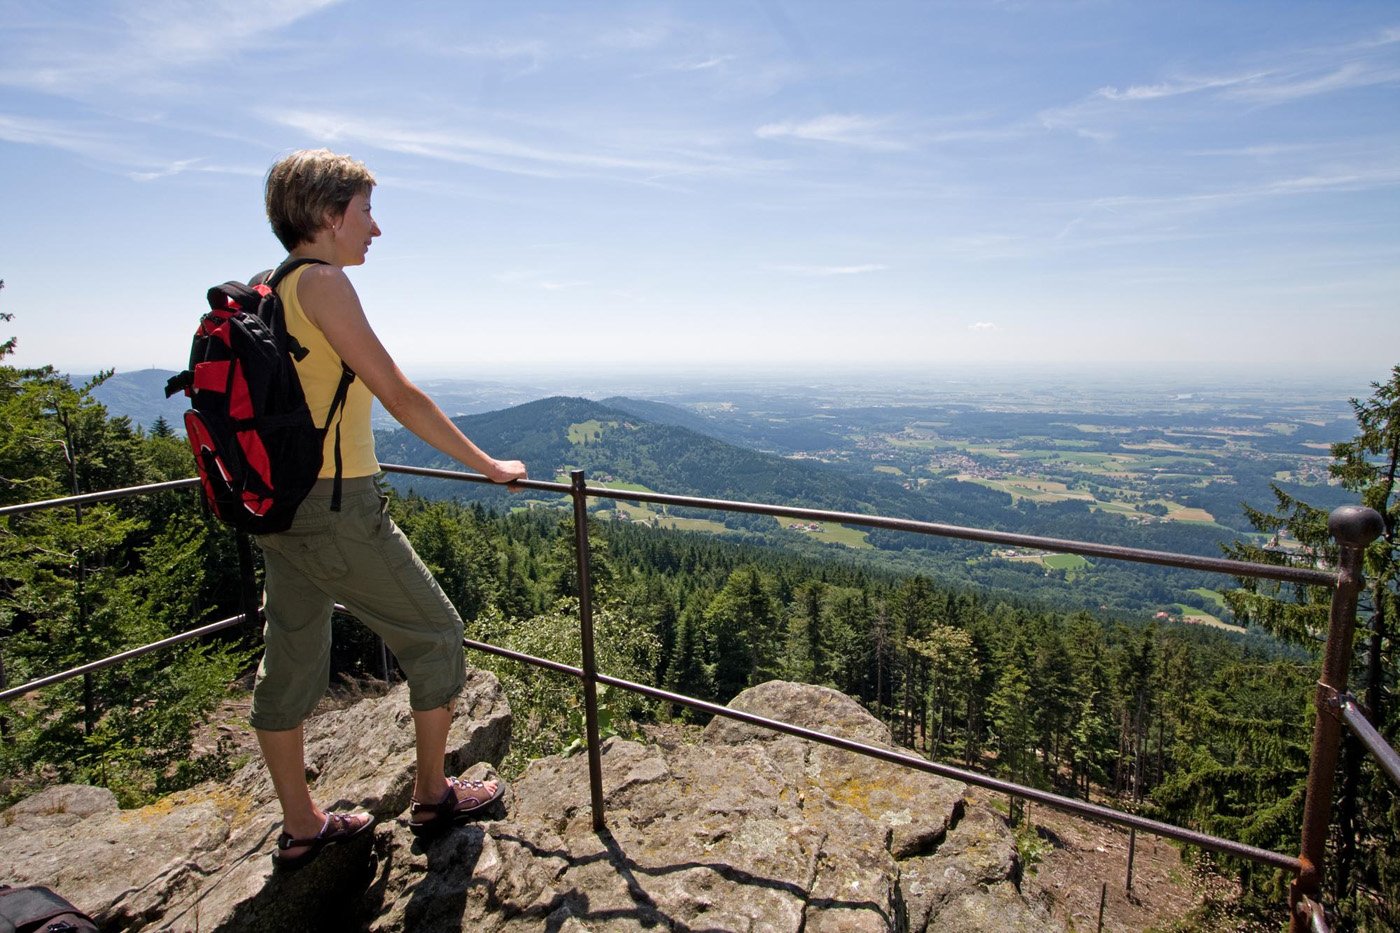 Der Regensburger Stein mit einer felsigen Aussichtskanzel bietet wunderschöne Ausblicke